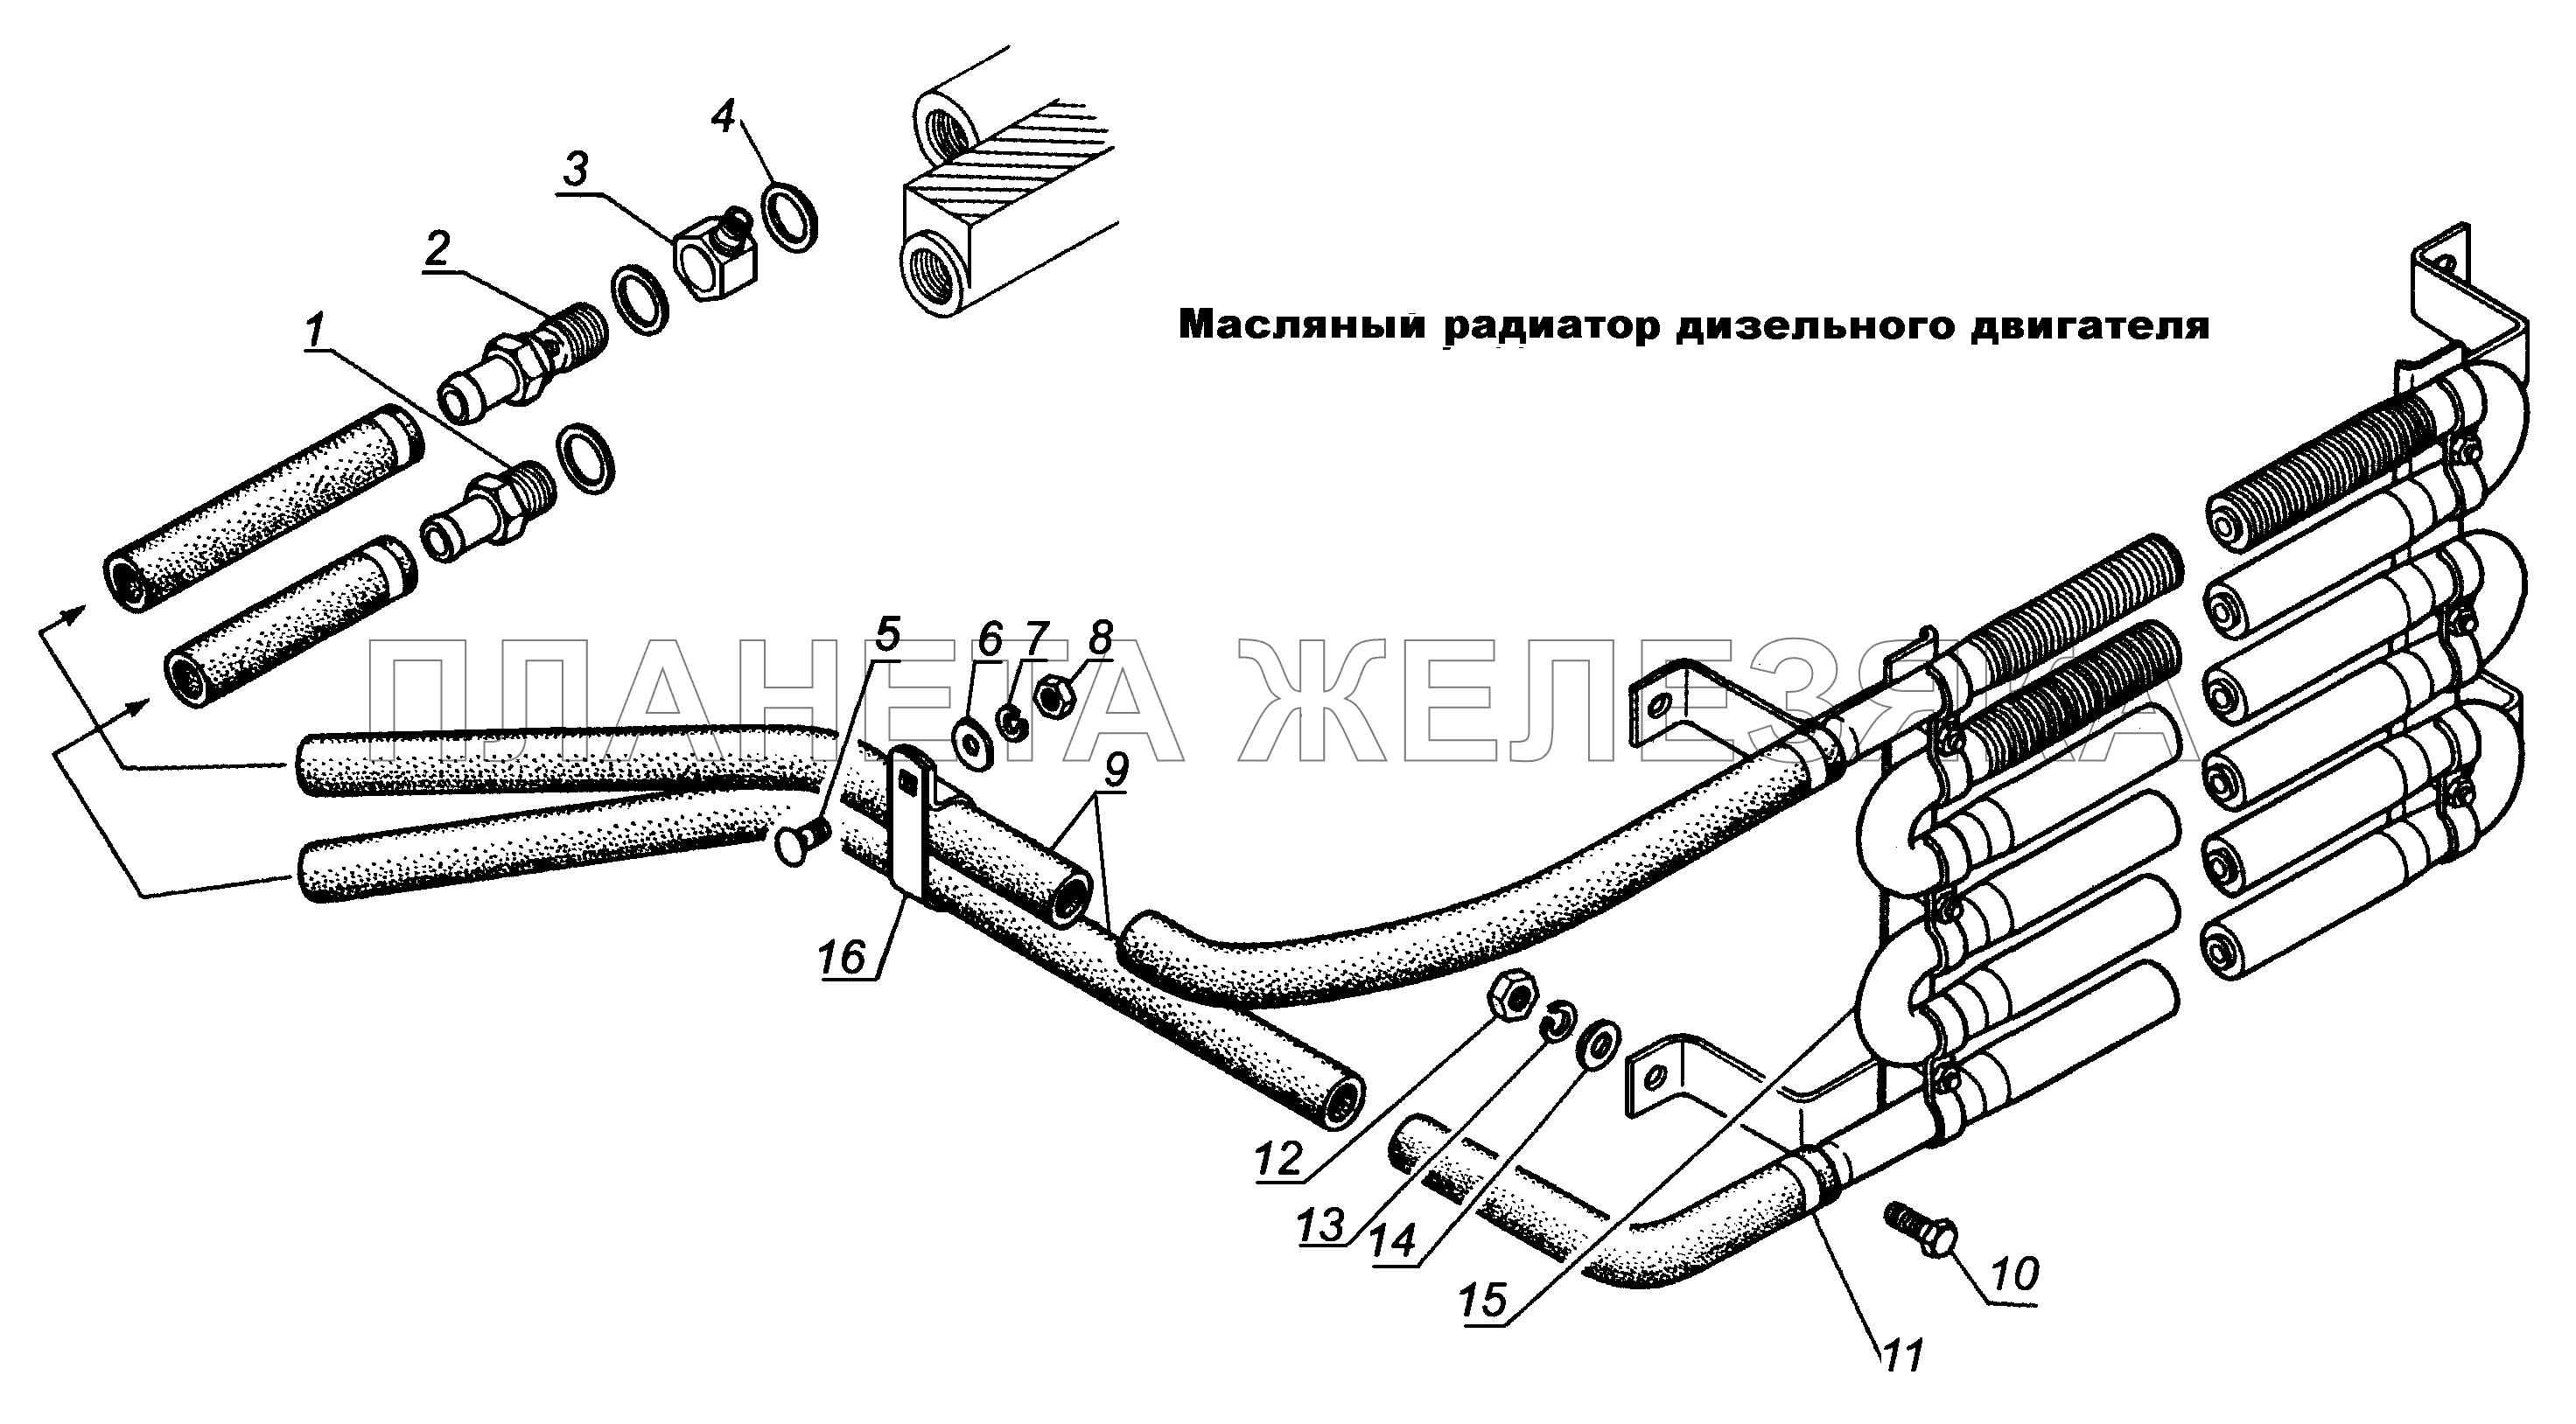 Масляный радиатор дизельного двигателя ГАЗ-3308